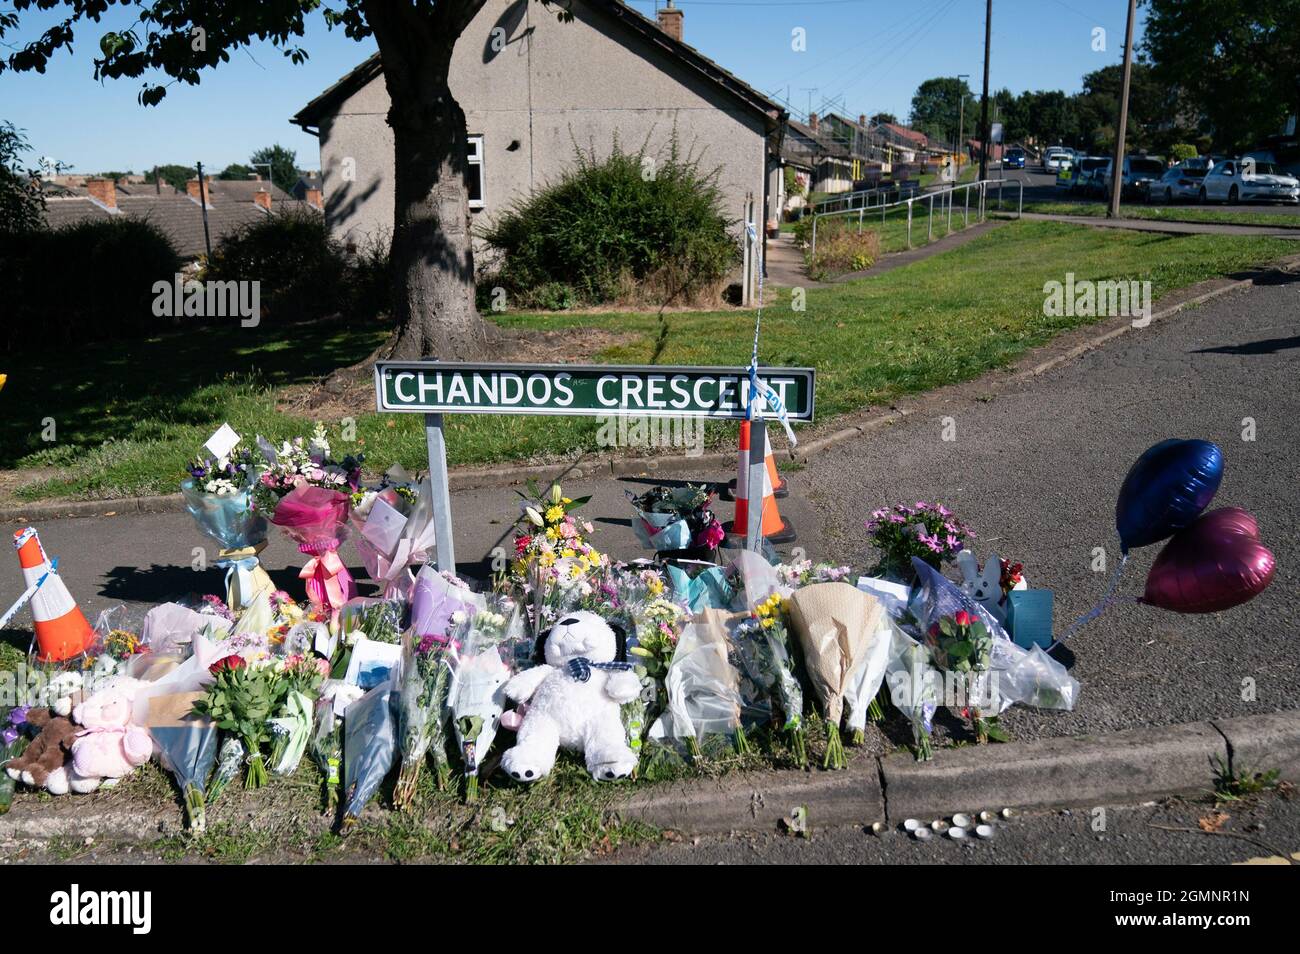 Hommages floraux sur la scène de Chandos Crescent à Killamarsh, près de Sheffield, où quatre personnes ont été trouvées mortes dans une maison dimanche. La police de Derbyshire a déclaré qu'un homme est en garde à vue et qu'il ne cherche personne d'autre en relation avec la mort. Date de la photo: Lundi 20 septembre 2021. Banque D'Images